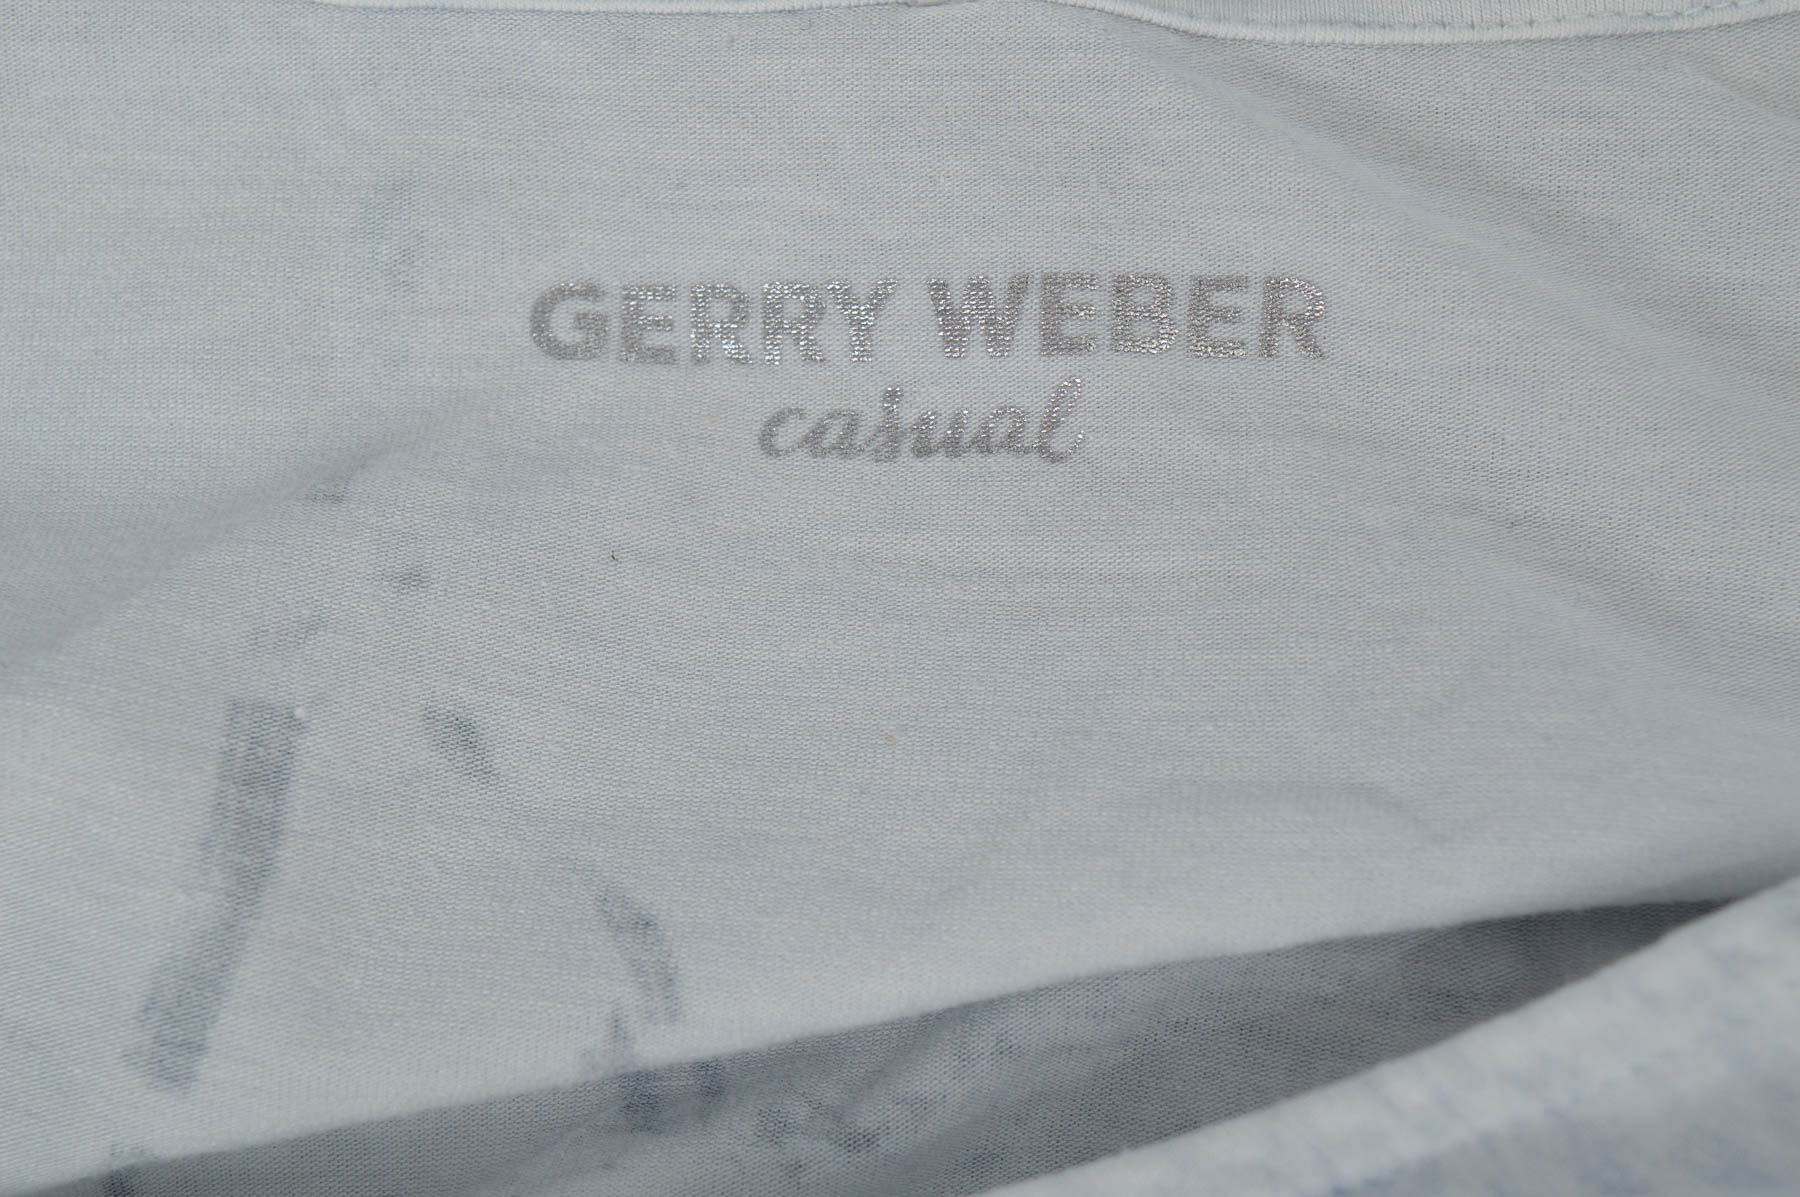 Women's t-shirt - GERRY WEBER - 2